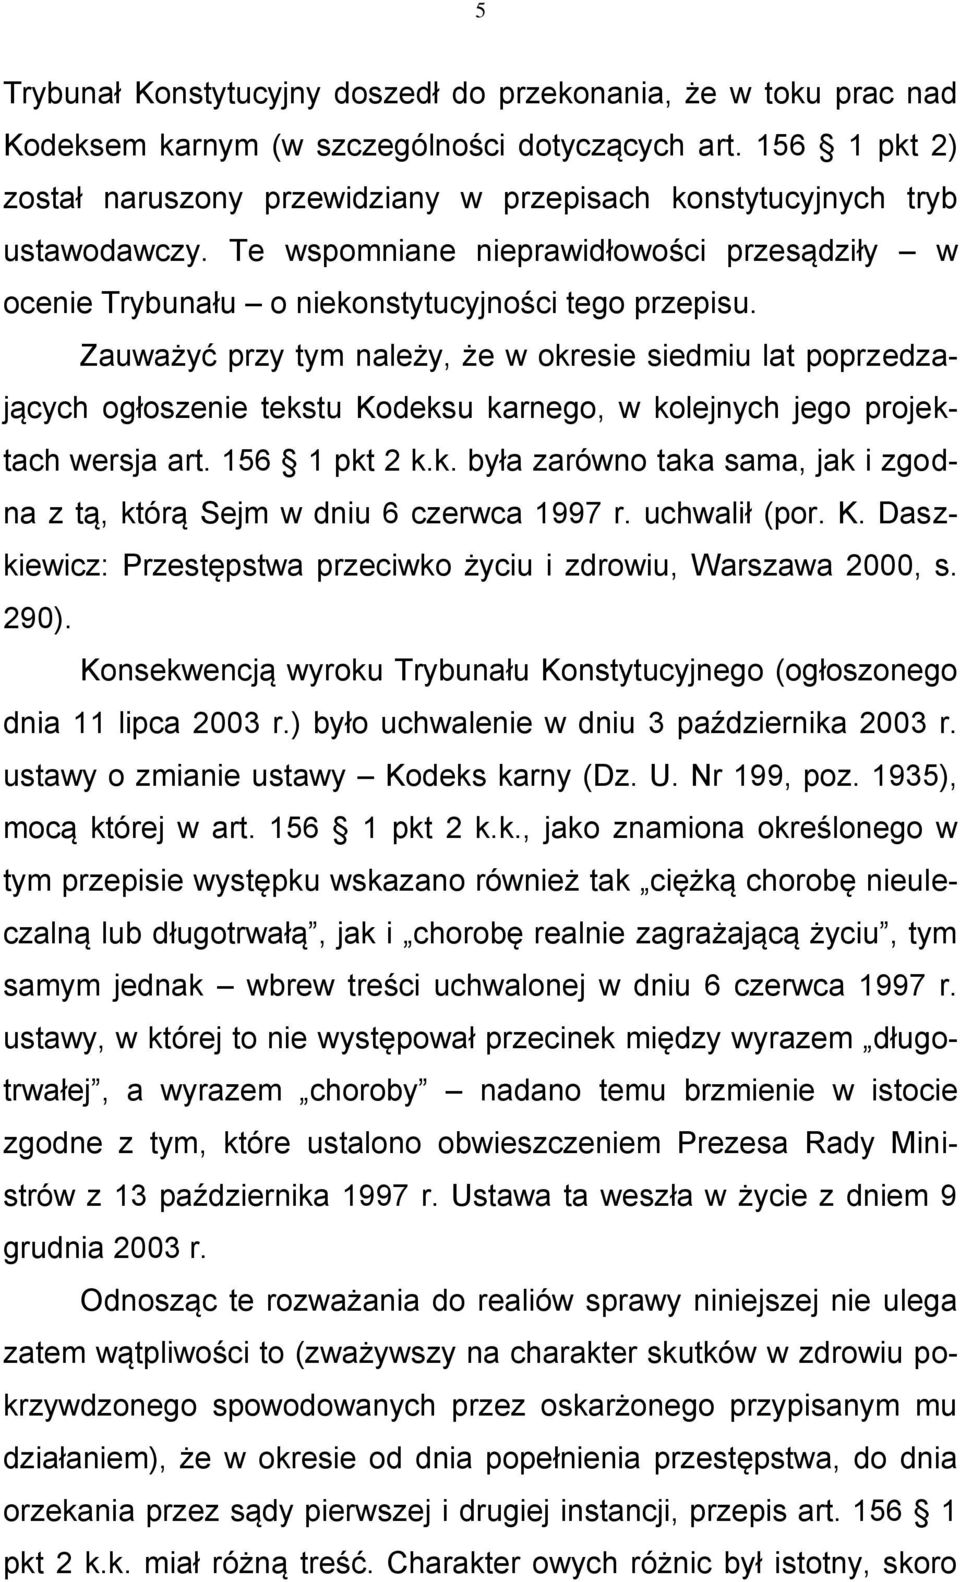 Zauważyć przy tym należy, że w okresie siedmiu lat poprzedzających ogłoszenie tekstu Kodeksu karnego, w kolejnych jego projektach wersja art. 156 1 pkt 2 k.k. była zarówno taka sama, jak i zgodna z tą, którą Sejm w dniu 6 czerwca 1997 r.